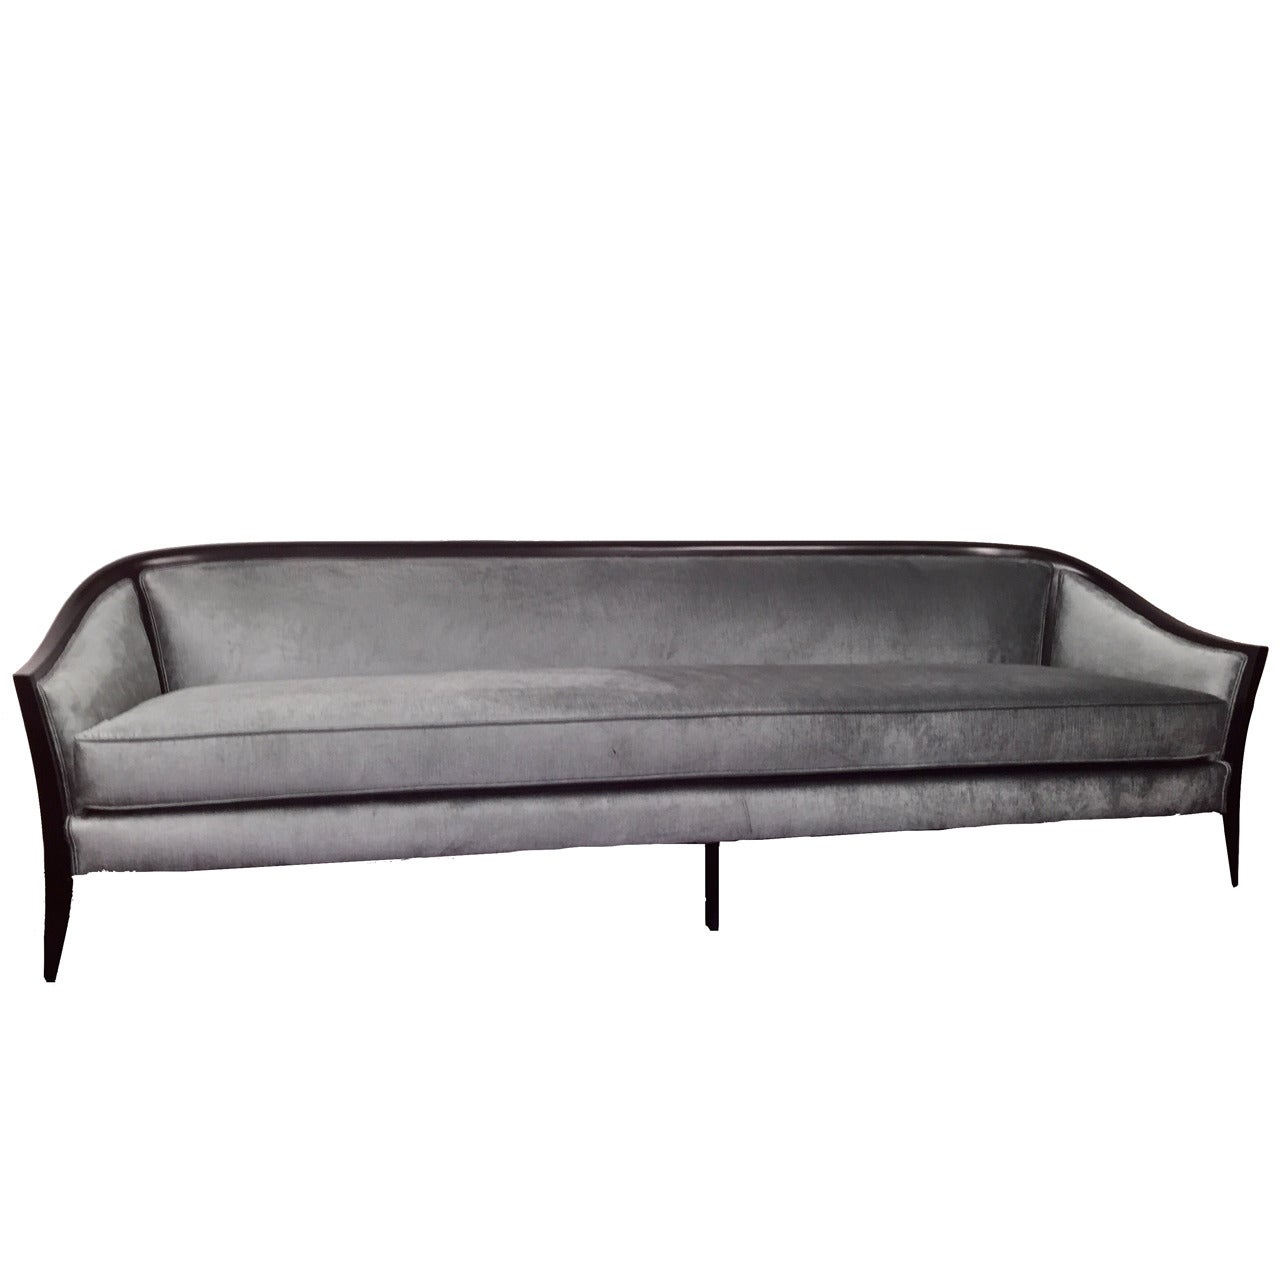 Elegant 1950s Paul Lazlo Inspired Sofa For Sale